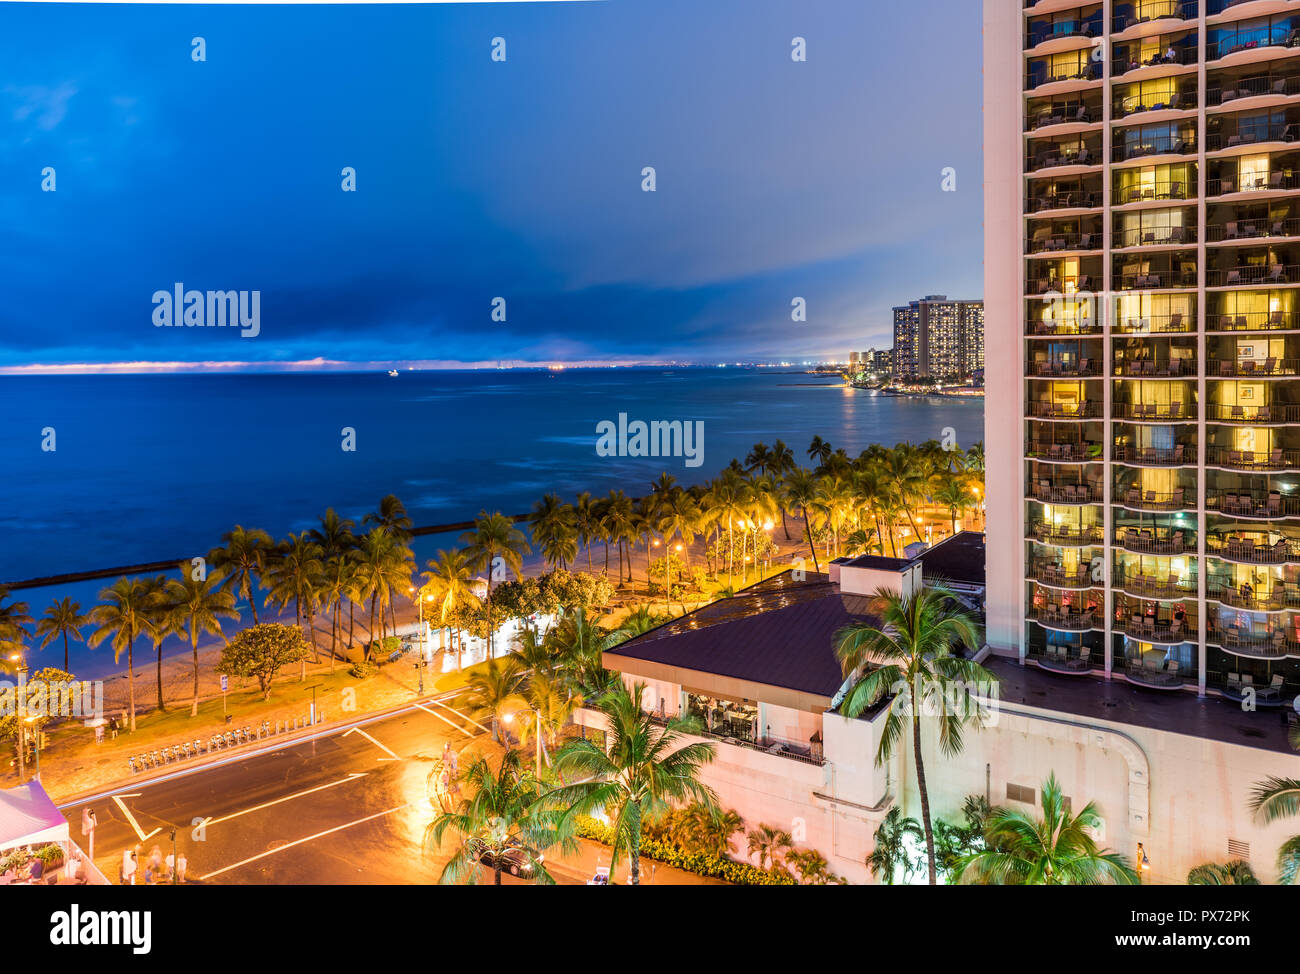 Blick auf die Fassade des Gebäudes in Honolulu, Hawaii. Kopieren Sie Platz für Text Stockfoto